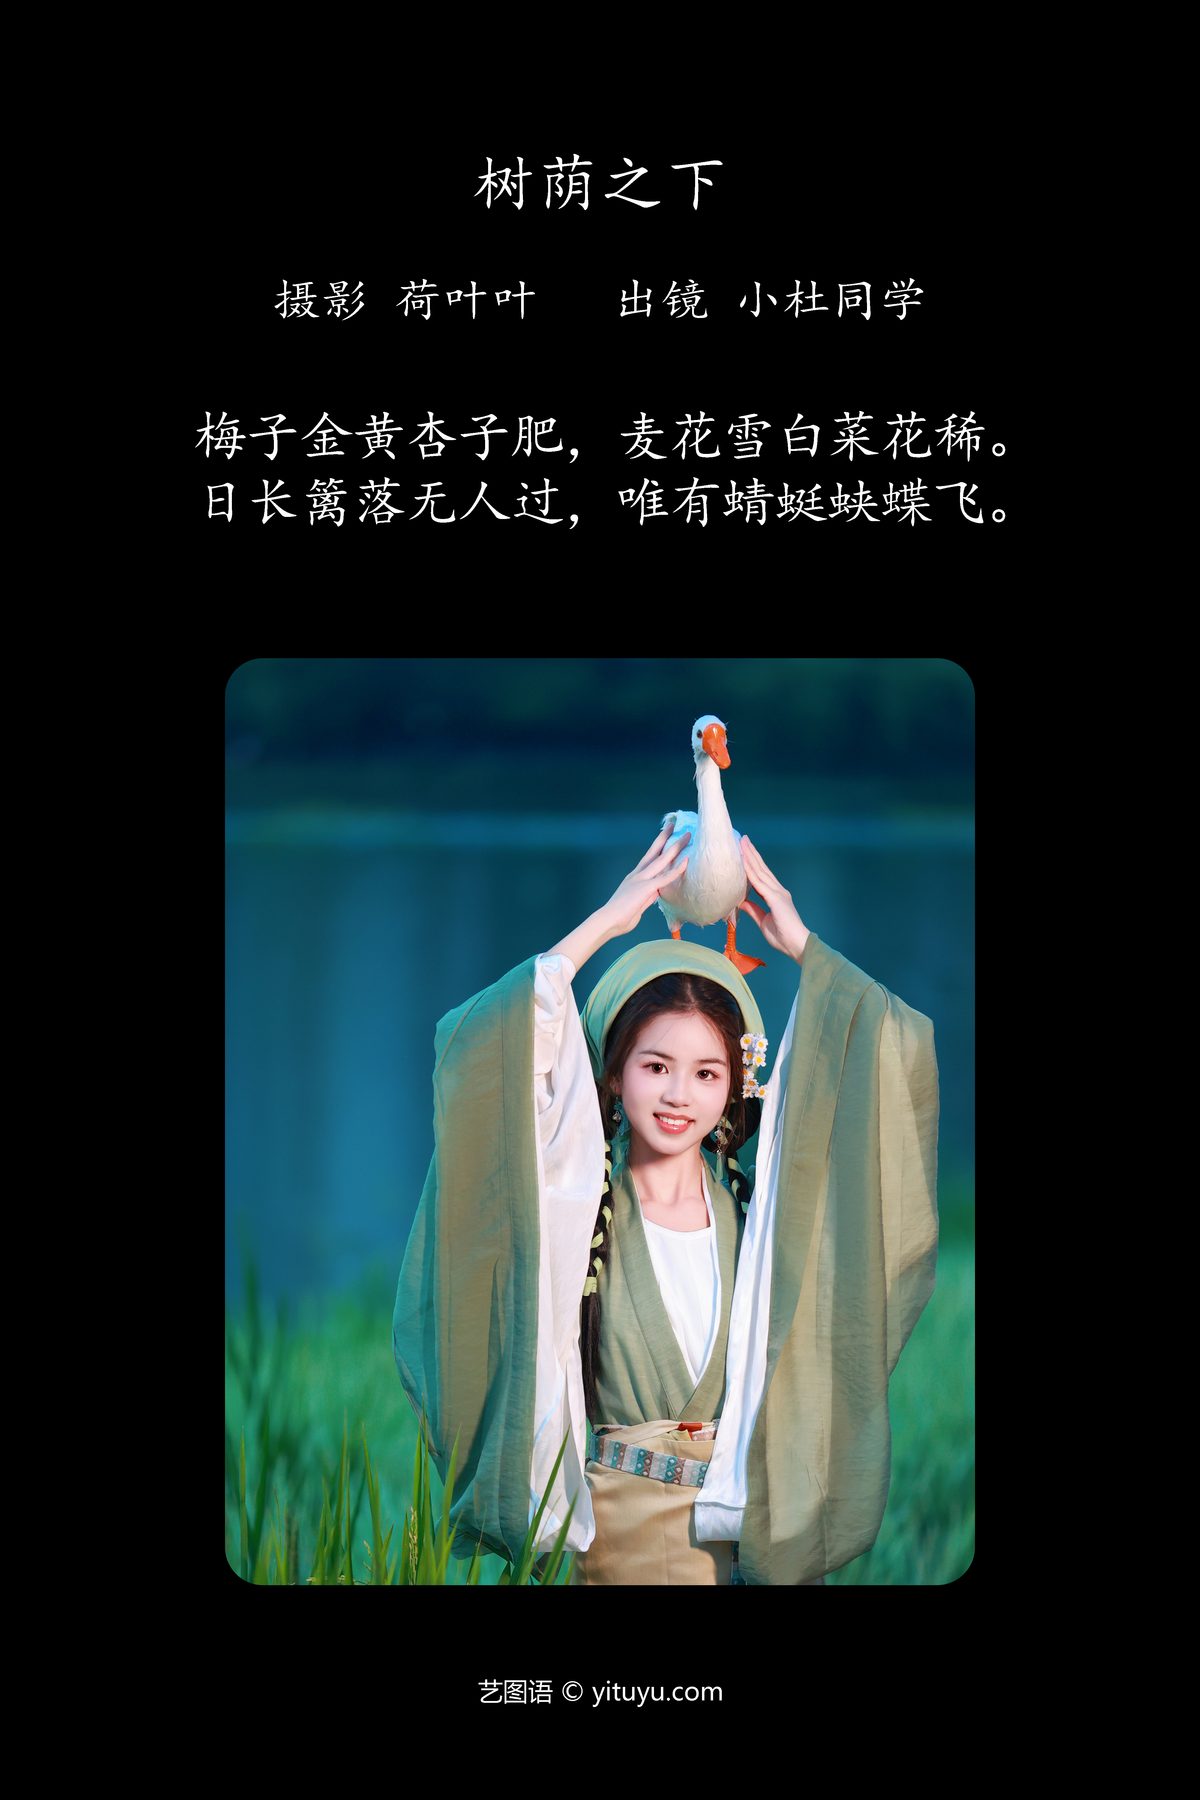 YiTuYu艺图语 Vol 5266 Xiao Du Tong Xue 0002 6131859545.jpg